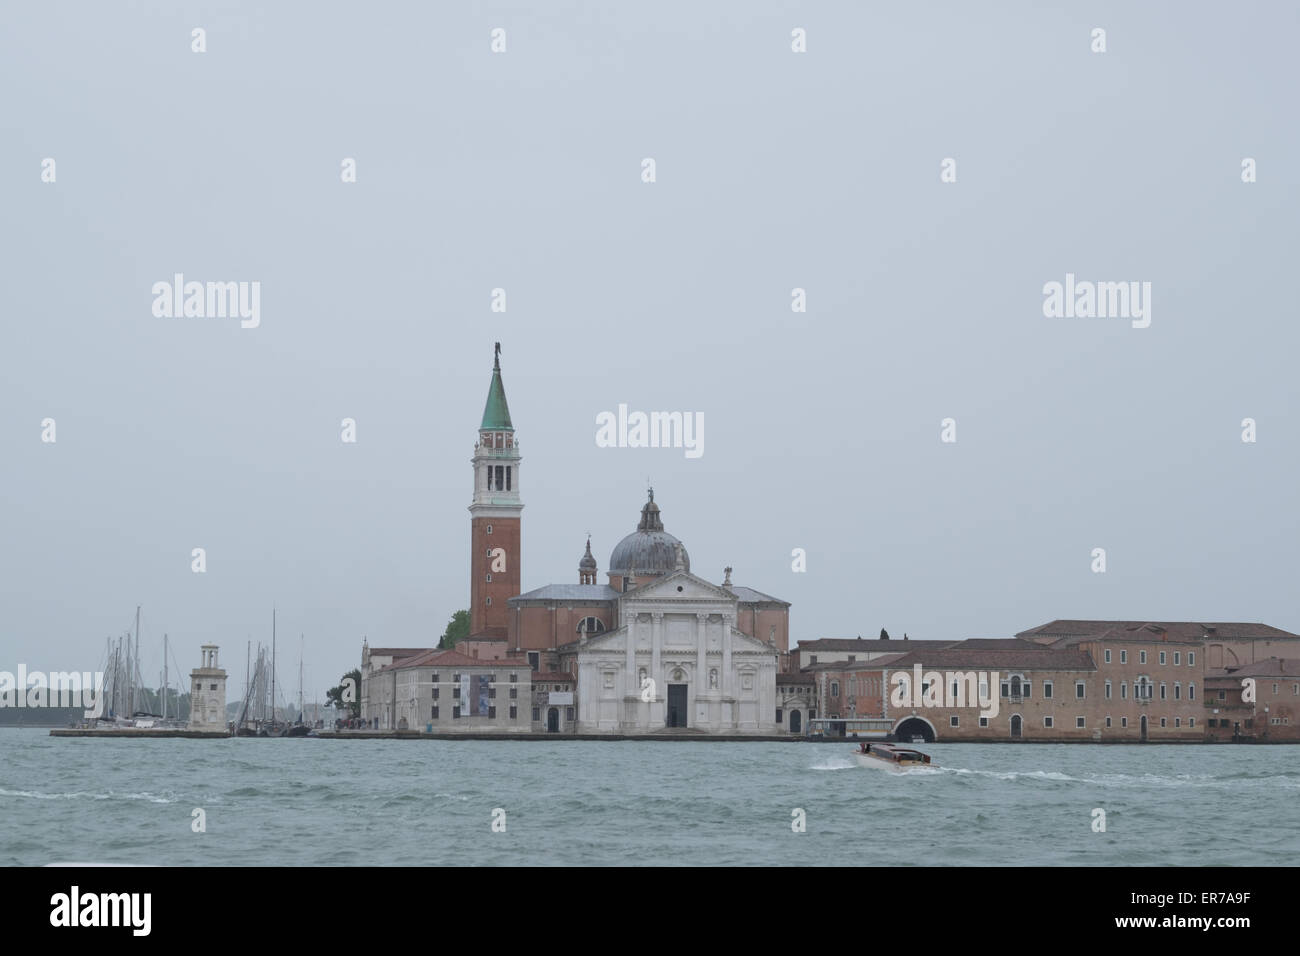 Church of San Giorgio Maggiore in Venice Italy. By architect Andrea Palladio. Stock Photo